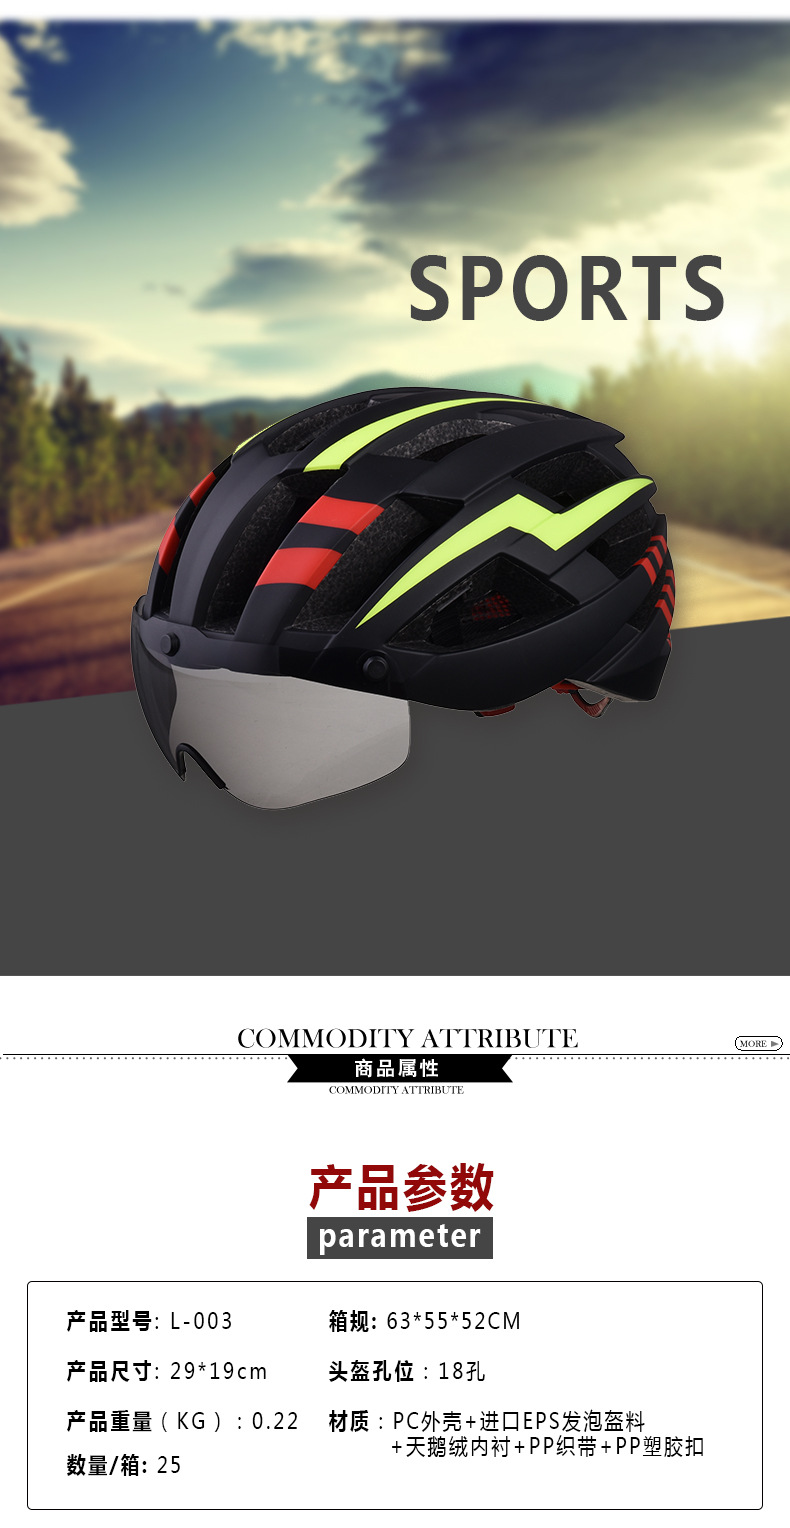 防风带吸磁风镜骑行头盔一体成型安全头盔公路山地车头盔轮滑头盔示例图4